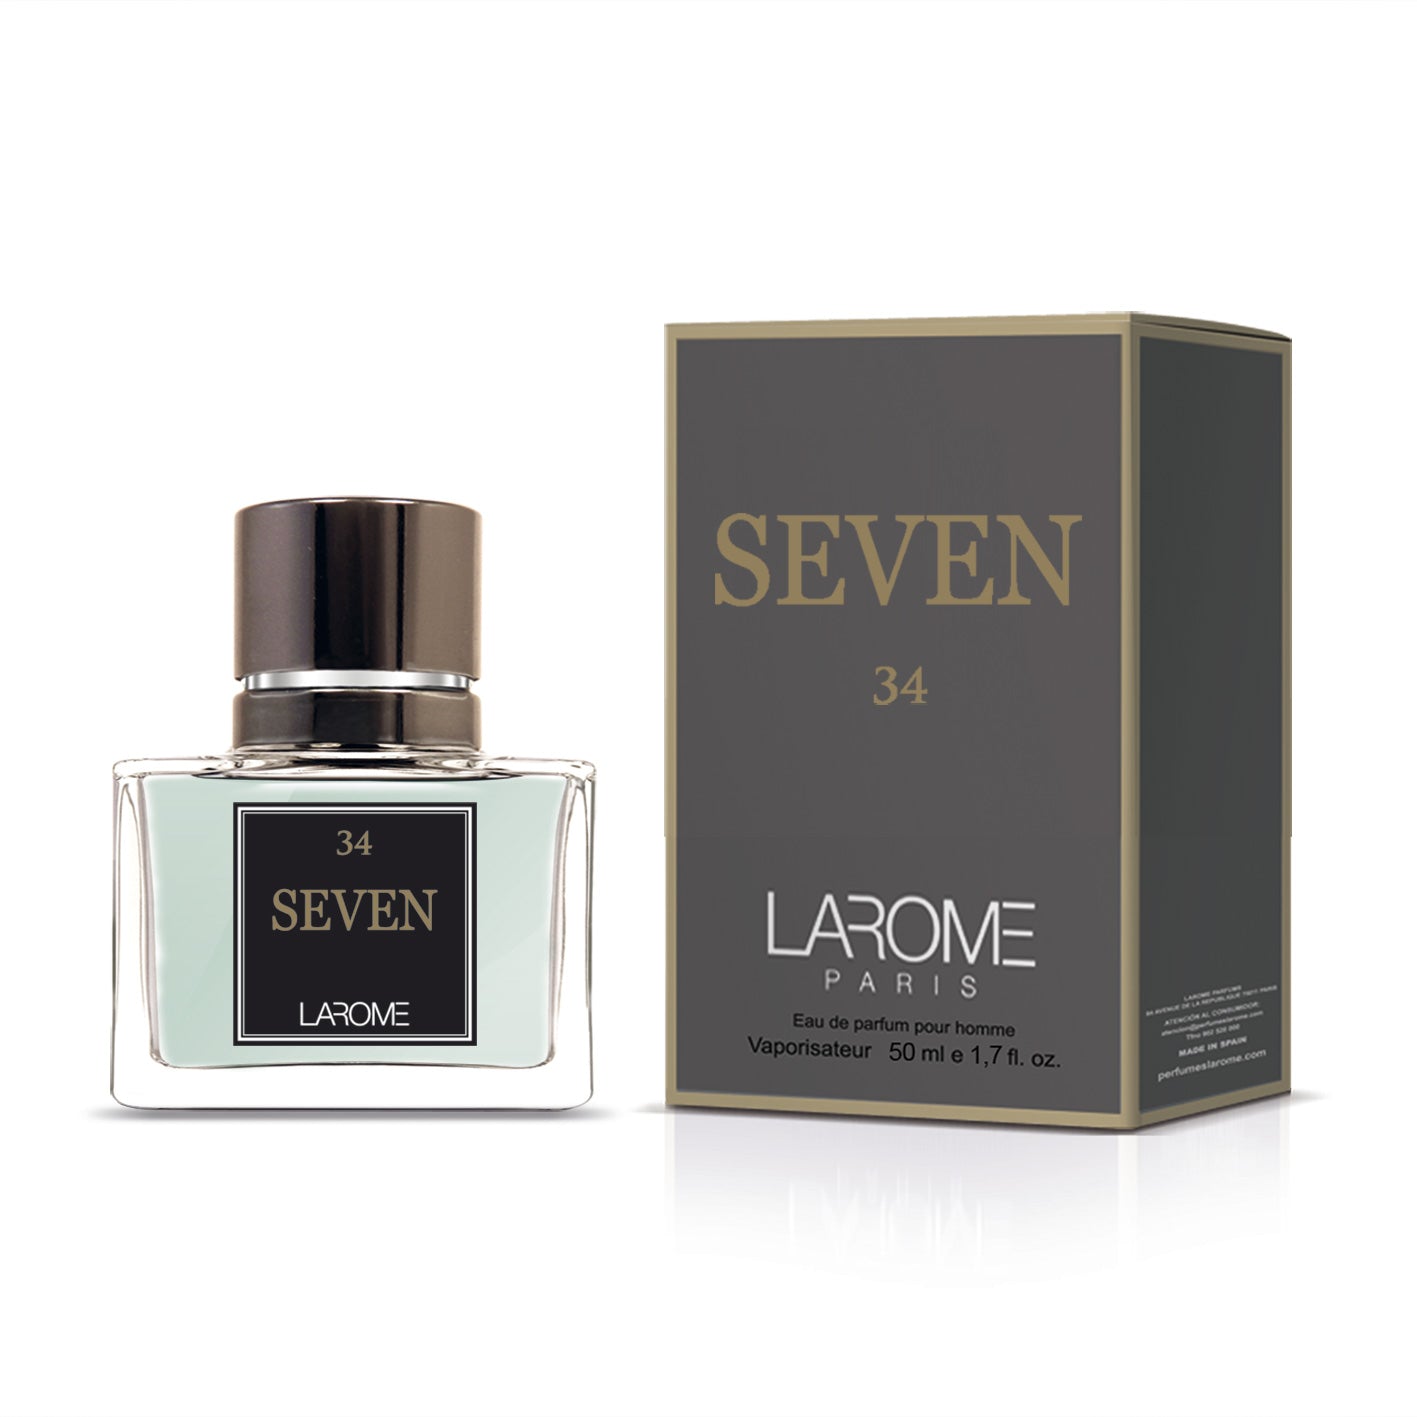 Seven 34M by Larome geïnspireerd door Siete